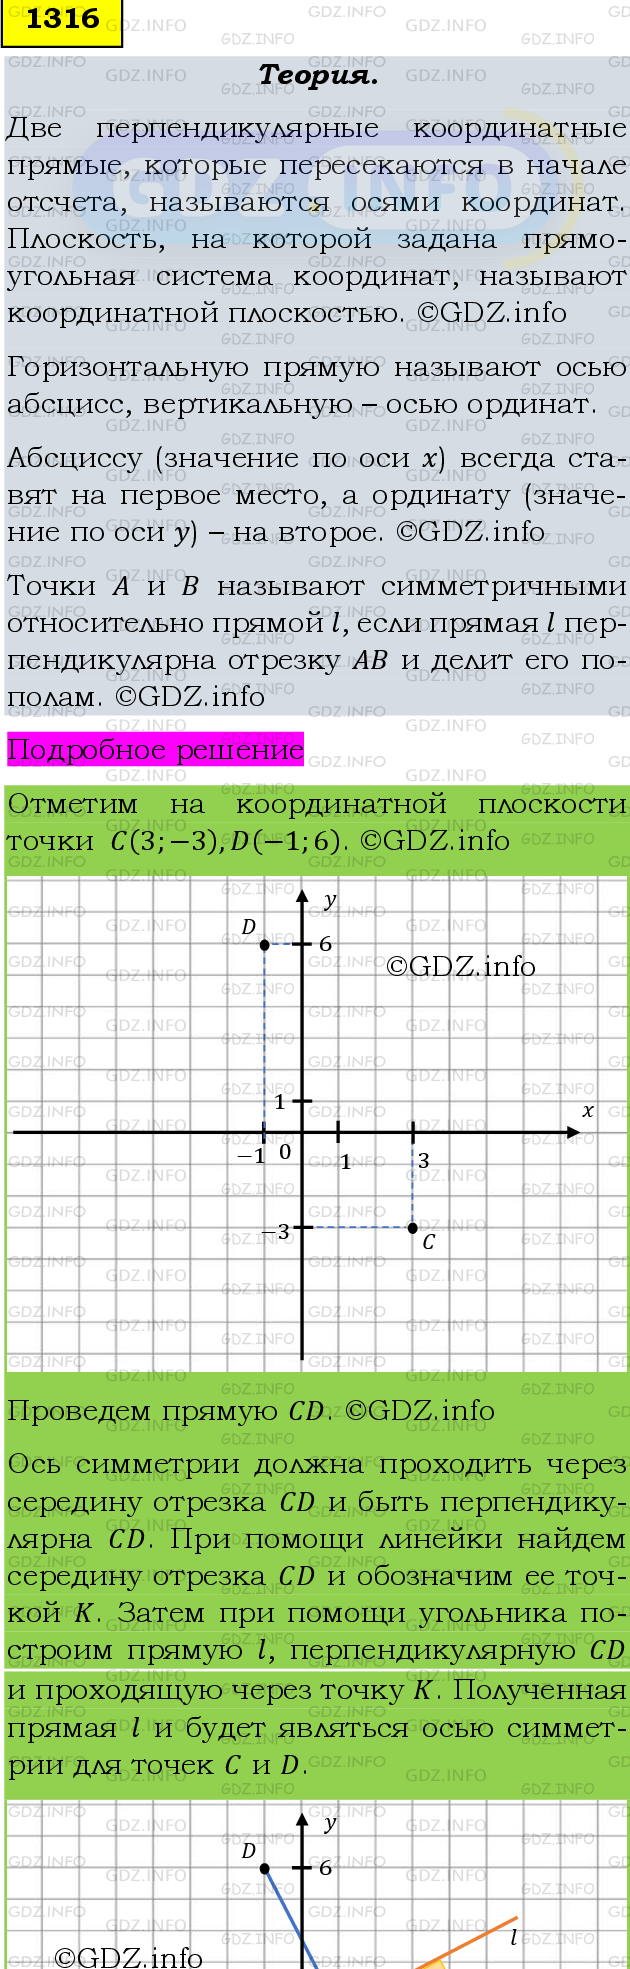 Фото подробного решения: Номер №1316 из ГДЗ по Математике 6 класс: Мерзляк А.Г.